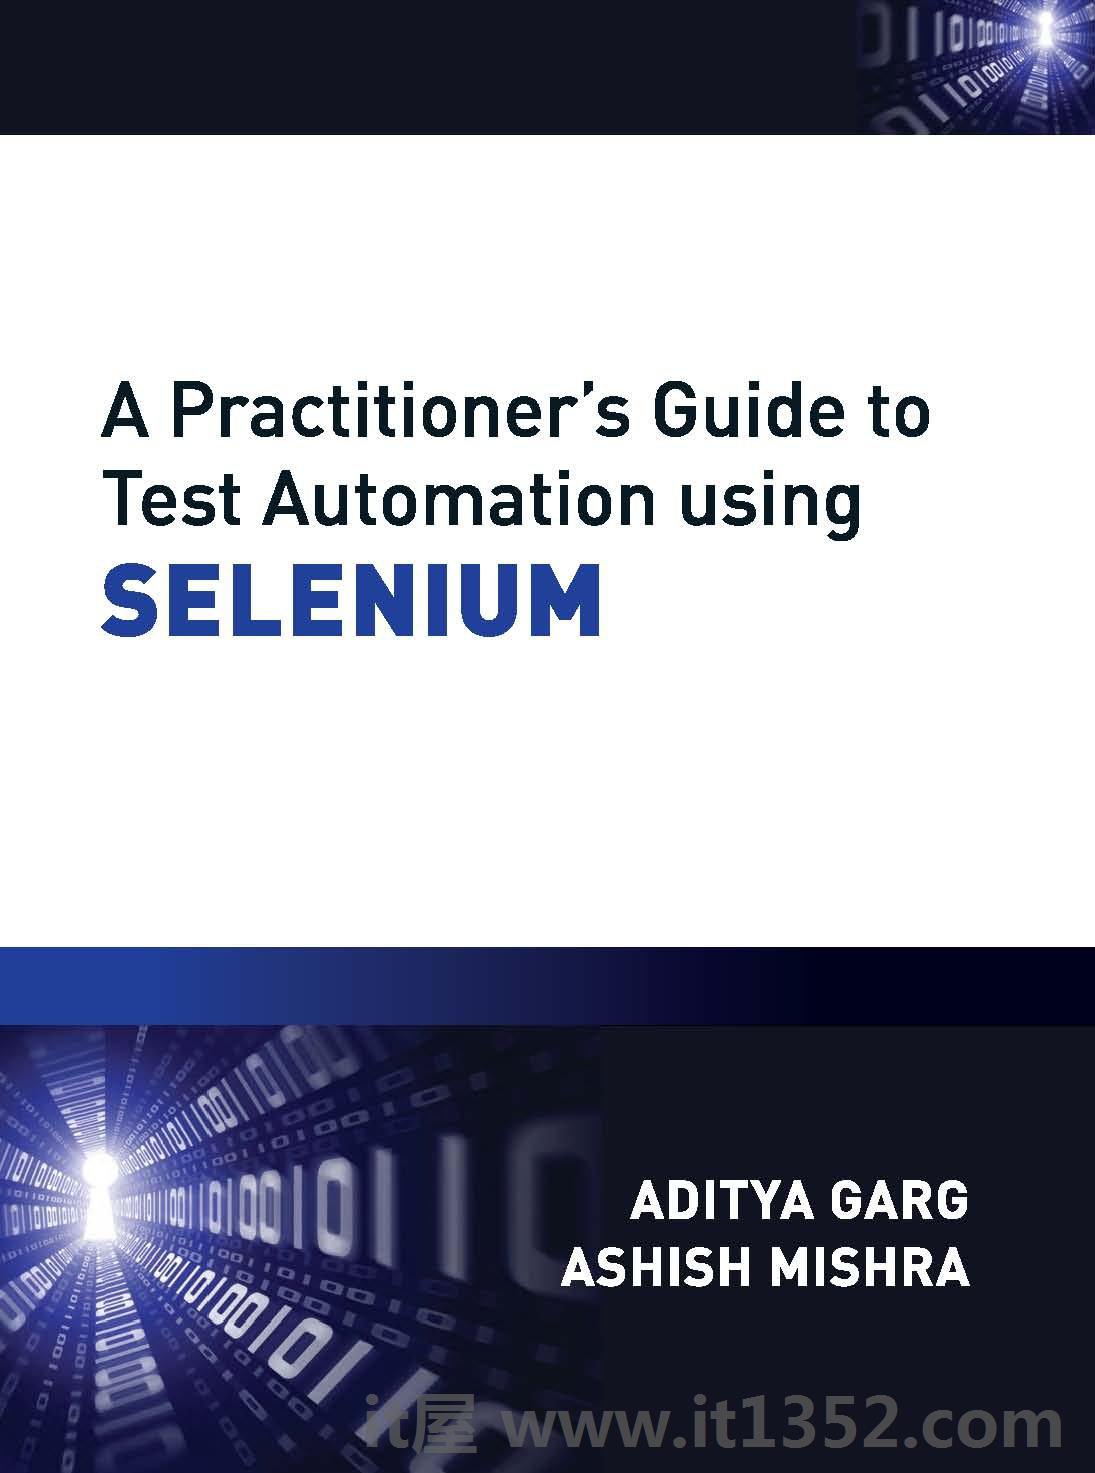 使用SELENIUM测试自动化的从业者指南